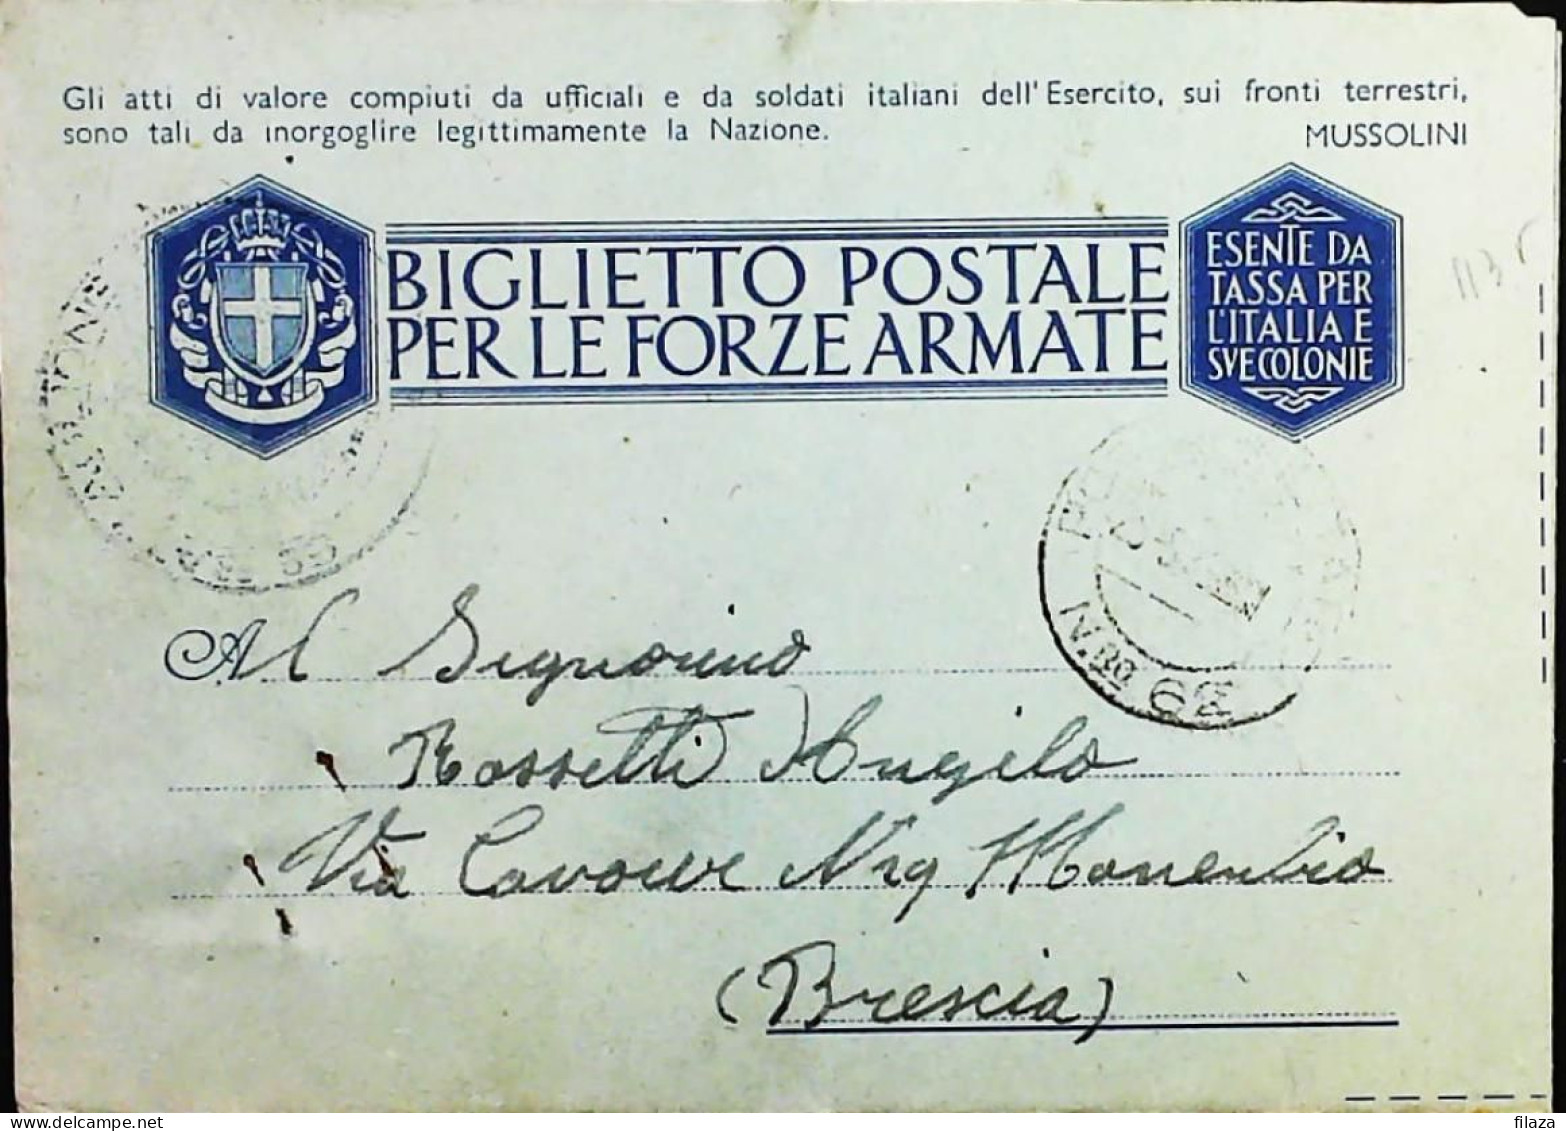 POSTA MILITARE ITALIA IN GRECIA  - WWII WW2 - S6833 - Militaire Post (PM)